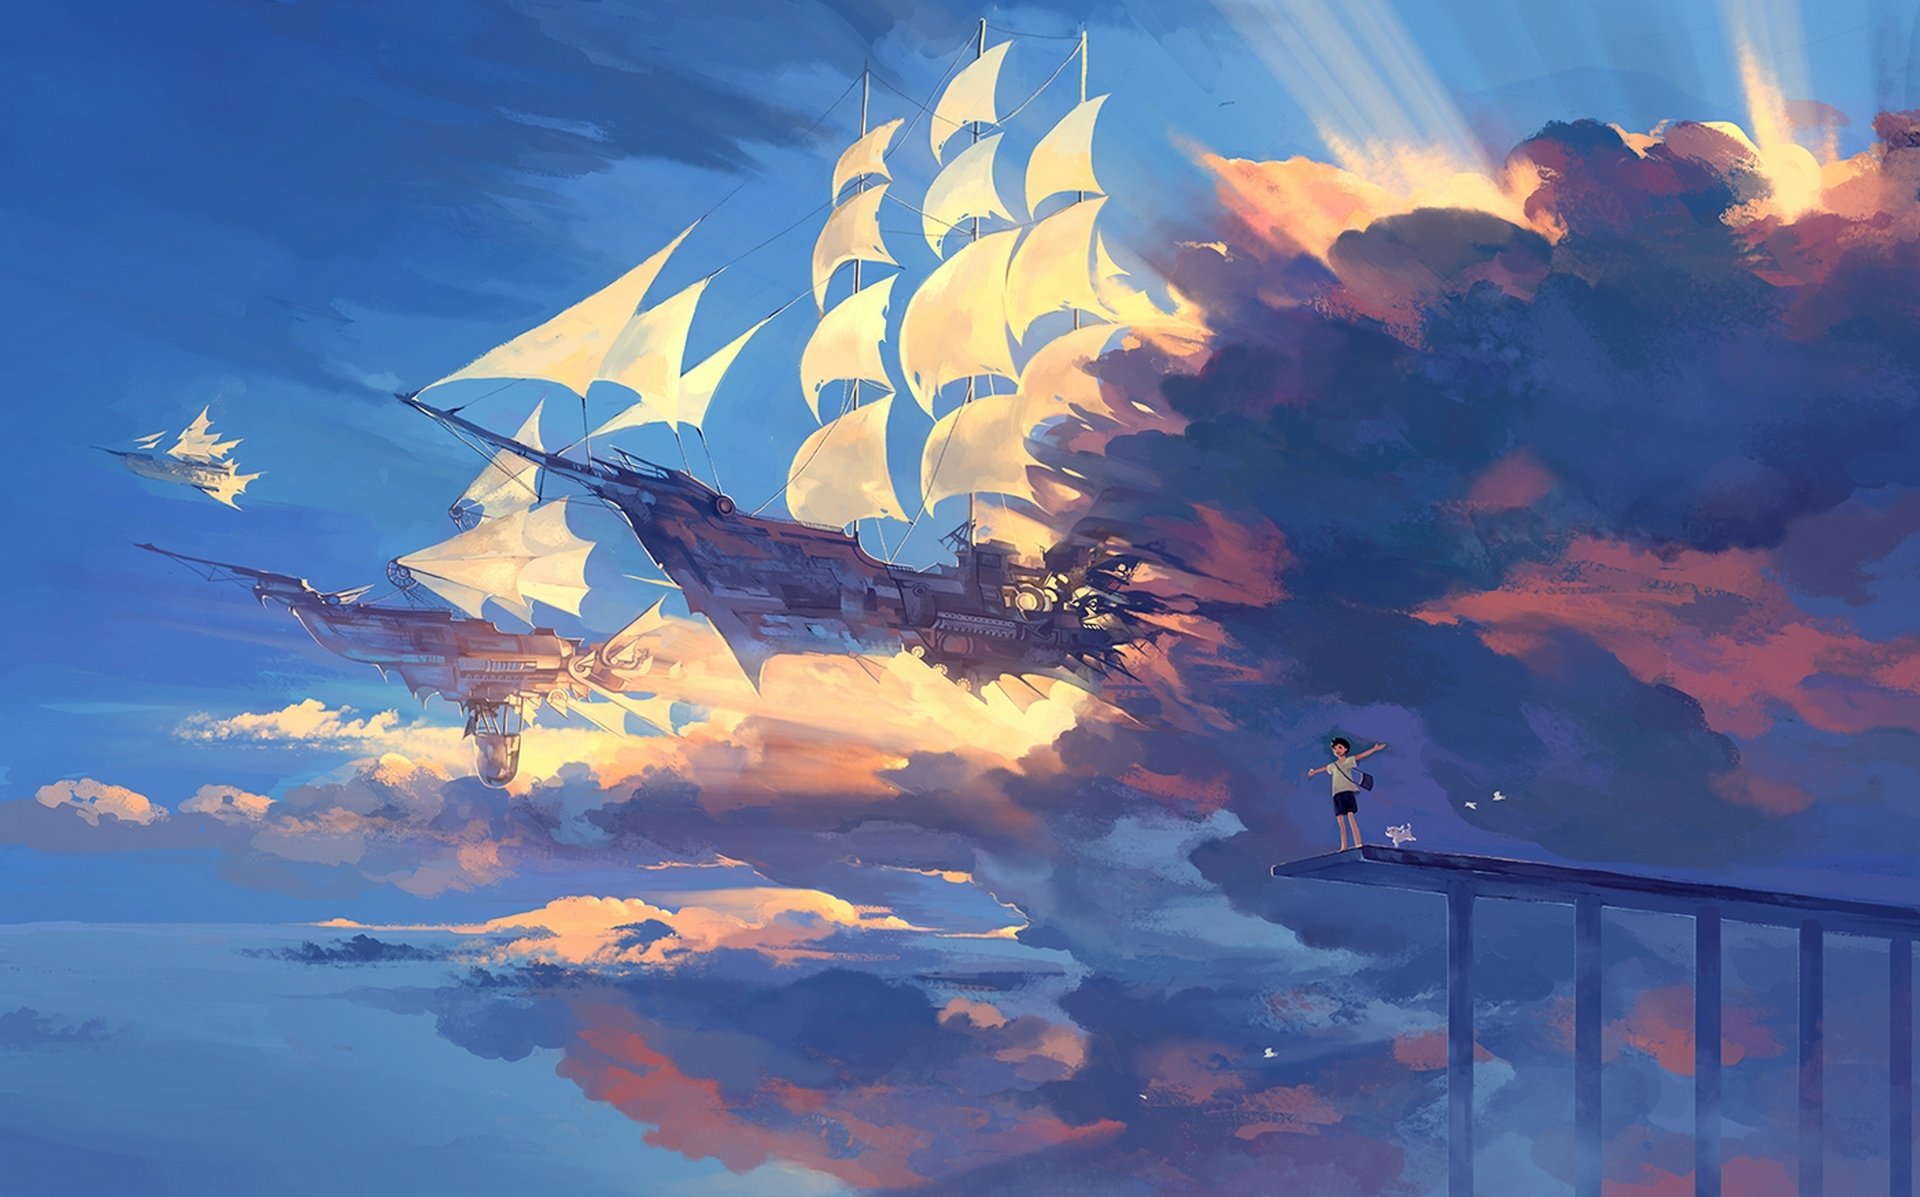 арт hanyijie парень небо облака корабли радость собака птицы пейзаж аниме